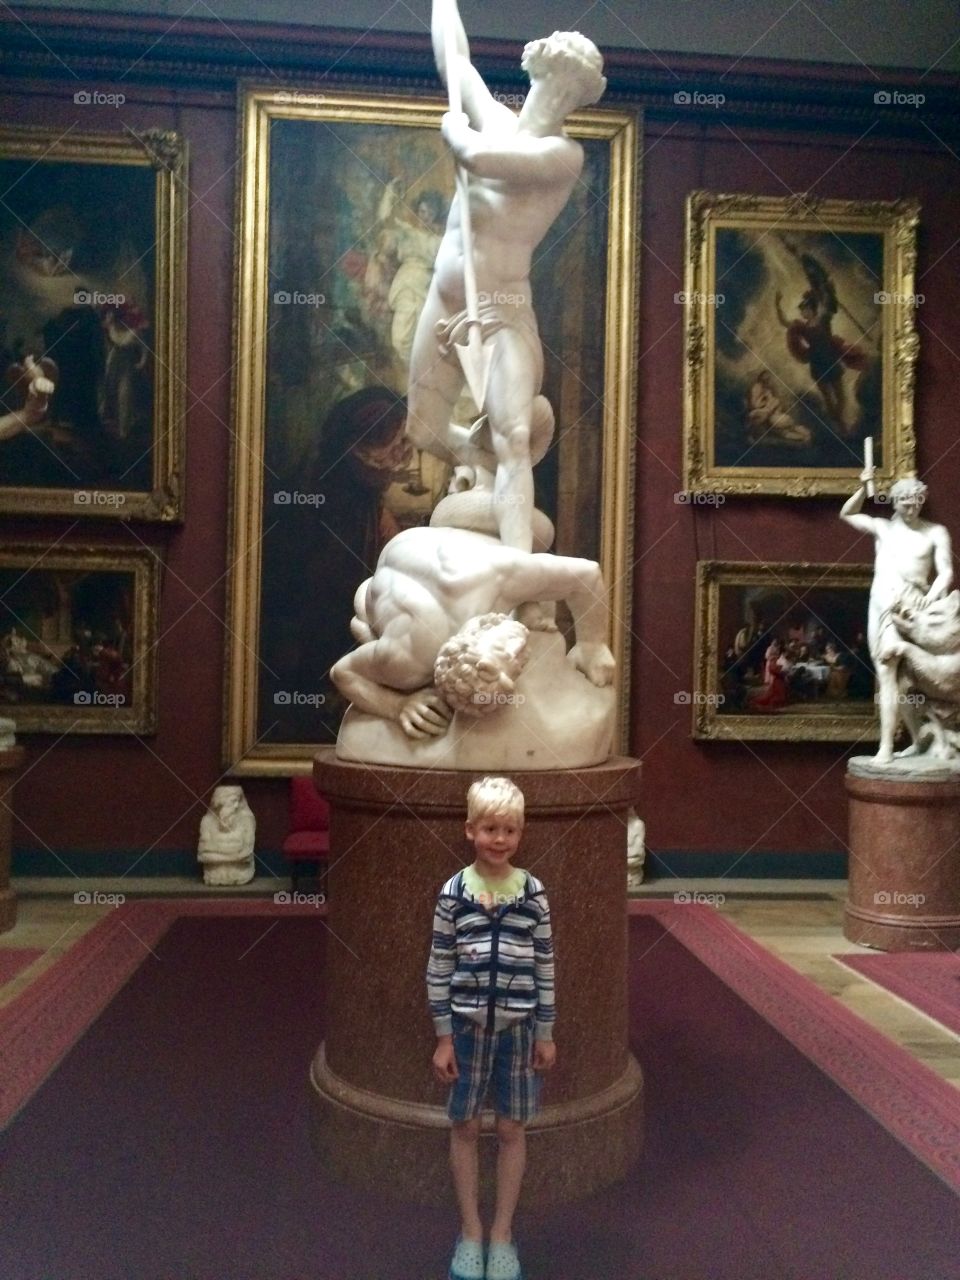 Boy standing in museum